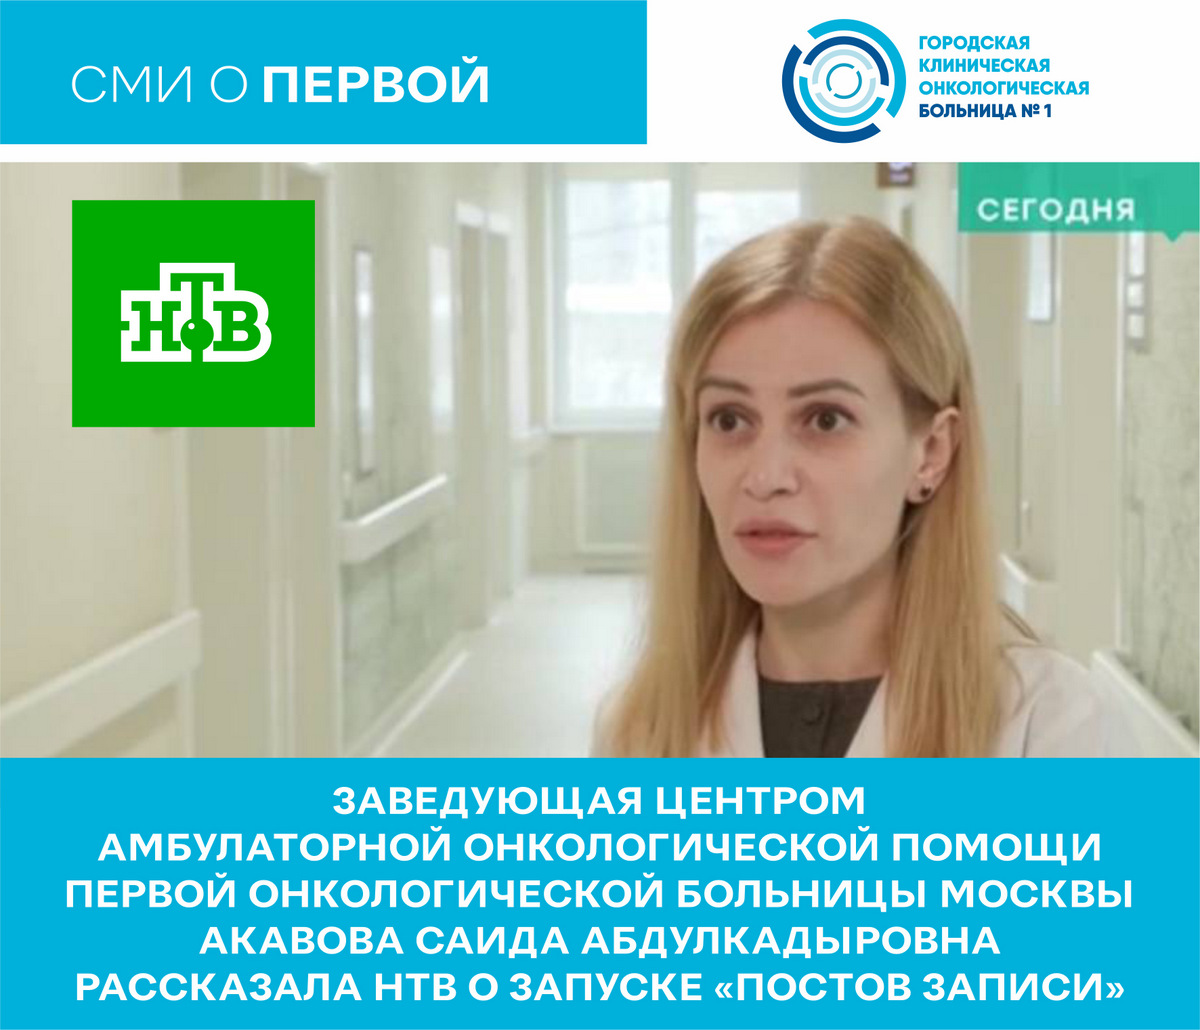 Заведующая центром амбулаторной онкологической помощи Первой онкологической больницы Москвы Акавова Саида Абдулкадыровна рассказала НТВ о запуске «постов записи»